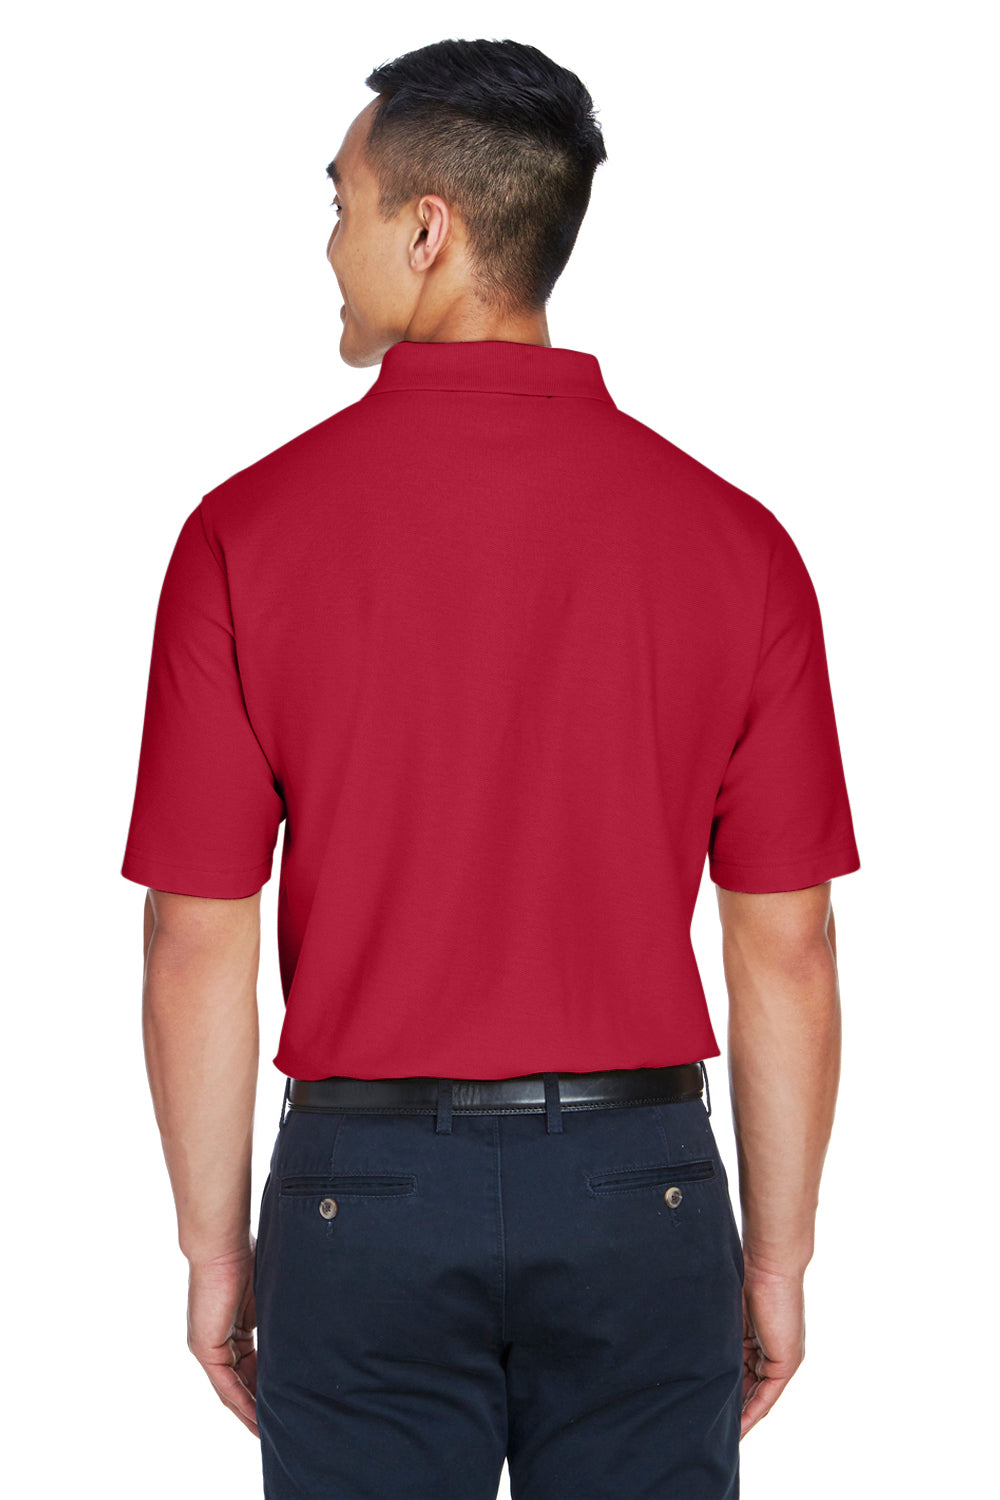 Devon & Jones DG150 Mens DryTec20 Performance Moisture Wicking Short Sleeve Polo Shirt Red Back